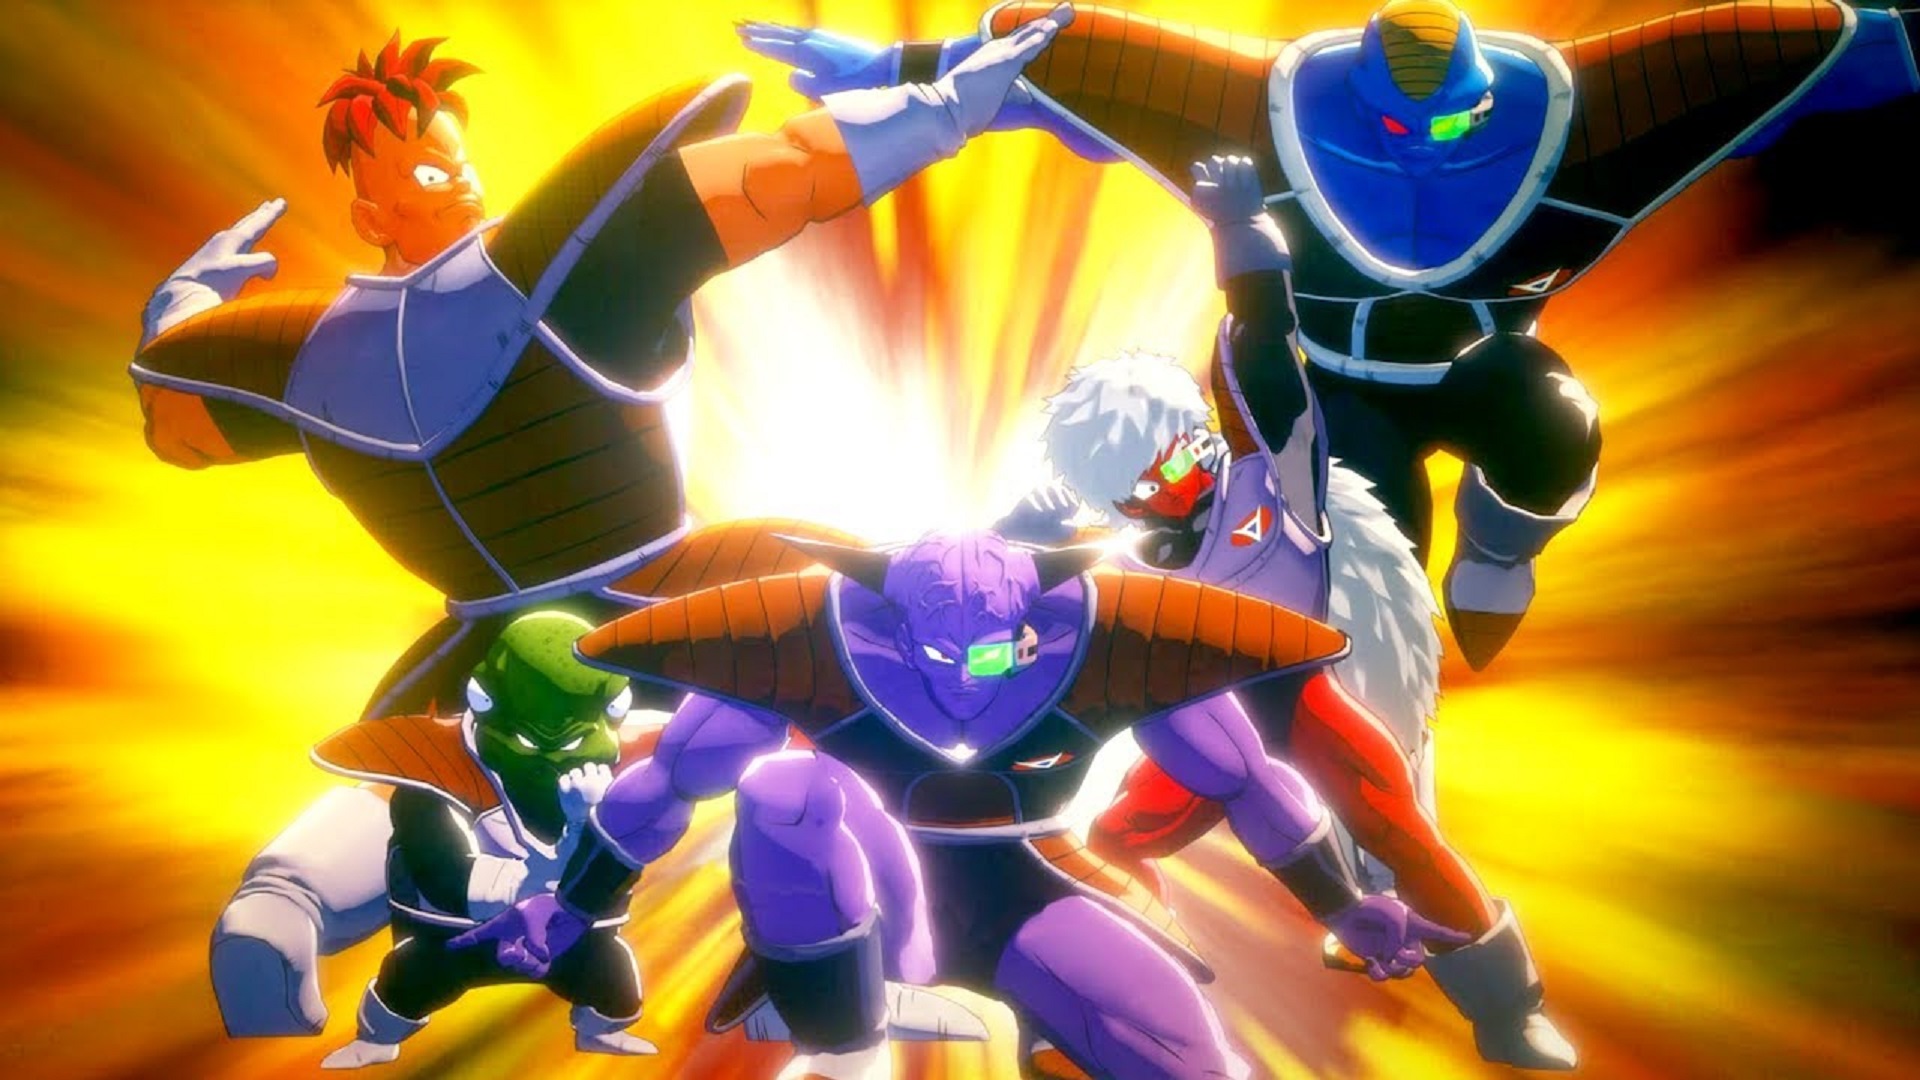 Uma teoria sugere que as poses engraçadas das forças Ginyu em Dragon Ball Z tinham uma grande utilidade